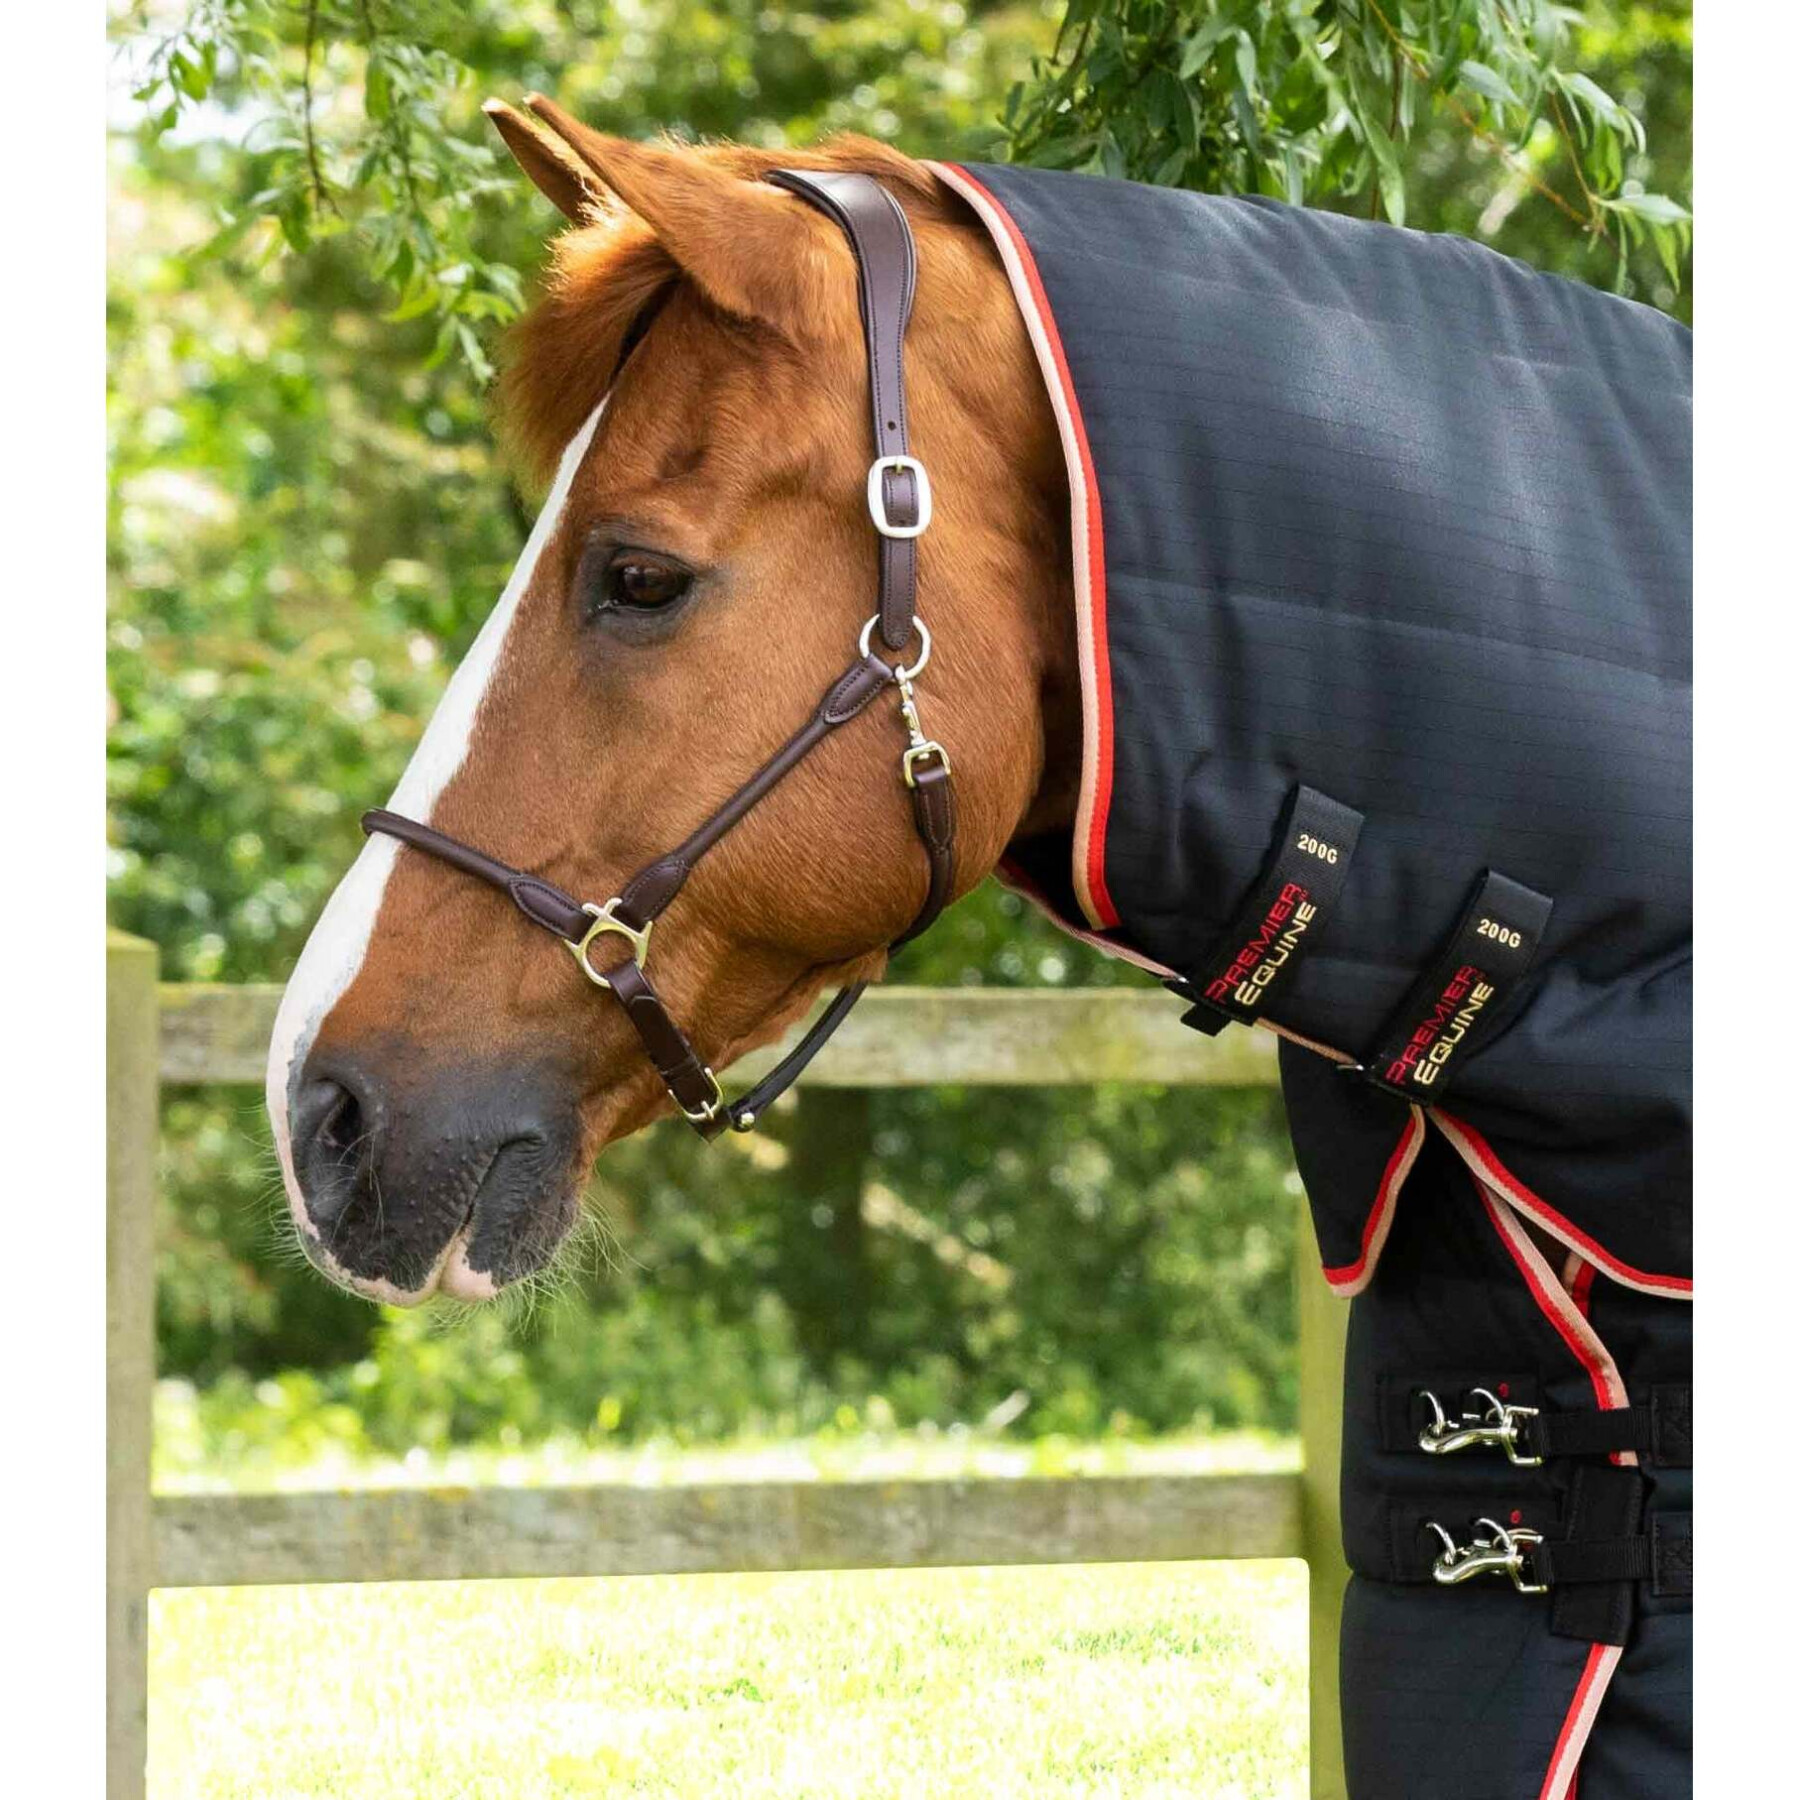 Cobertor de estábulo para cavalos com cobertura para o pescoço Premier Equine Stable Buster 200g